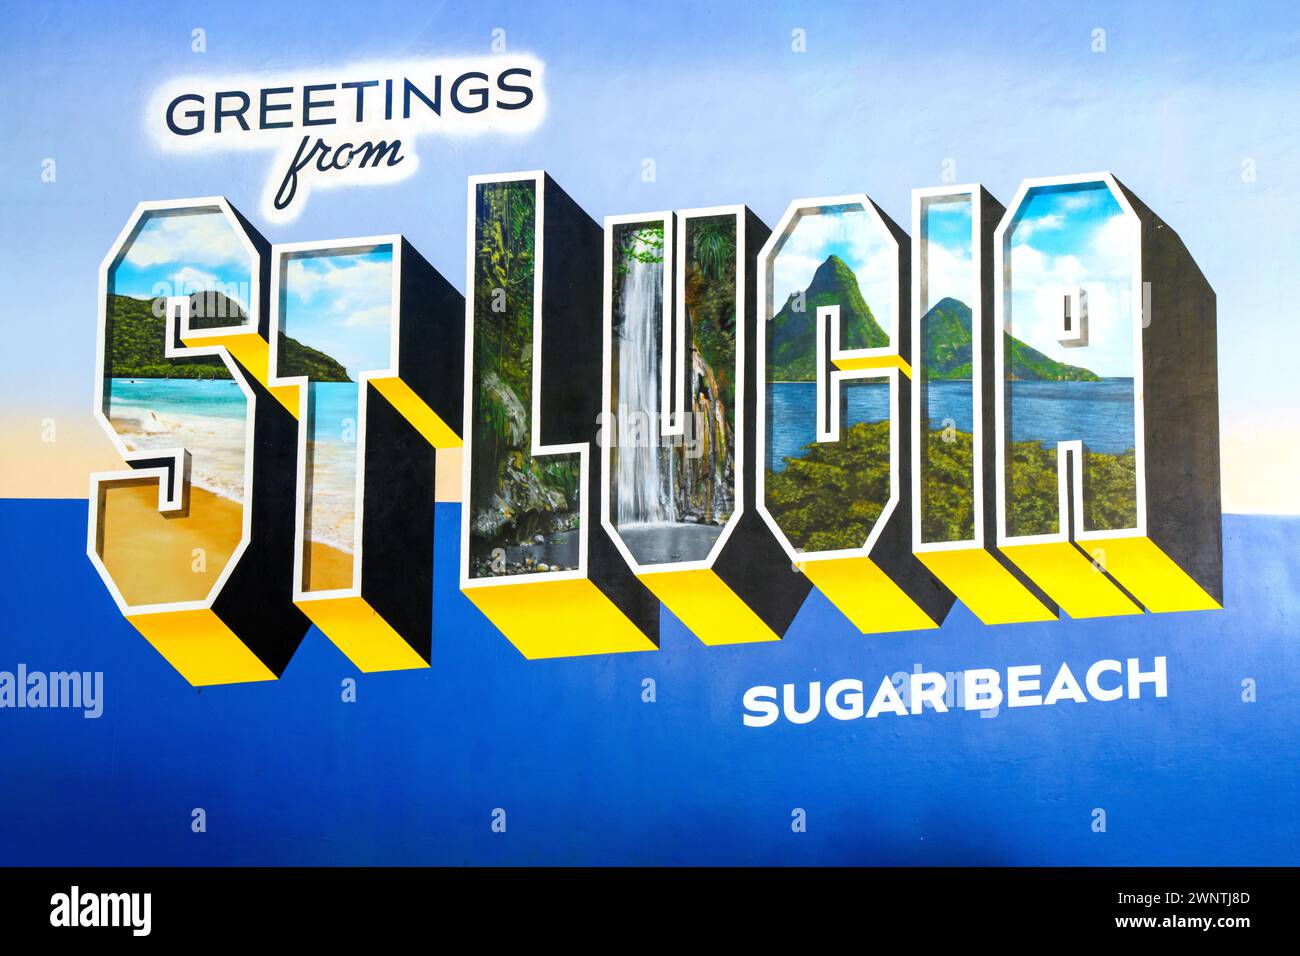 Peinture de carte postale de Sainte-Lucie, Sugar Beach Hotel cinq étoiles Luxury Resort et plage Soufrière, Sainte-Lucie, Antilles, Caraïbes orientales Banque D'Images